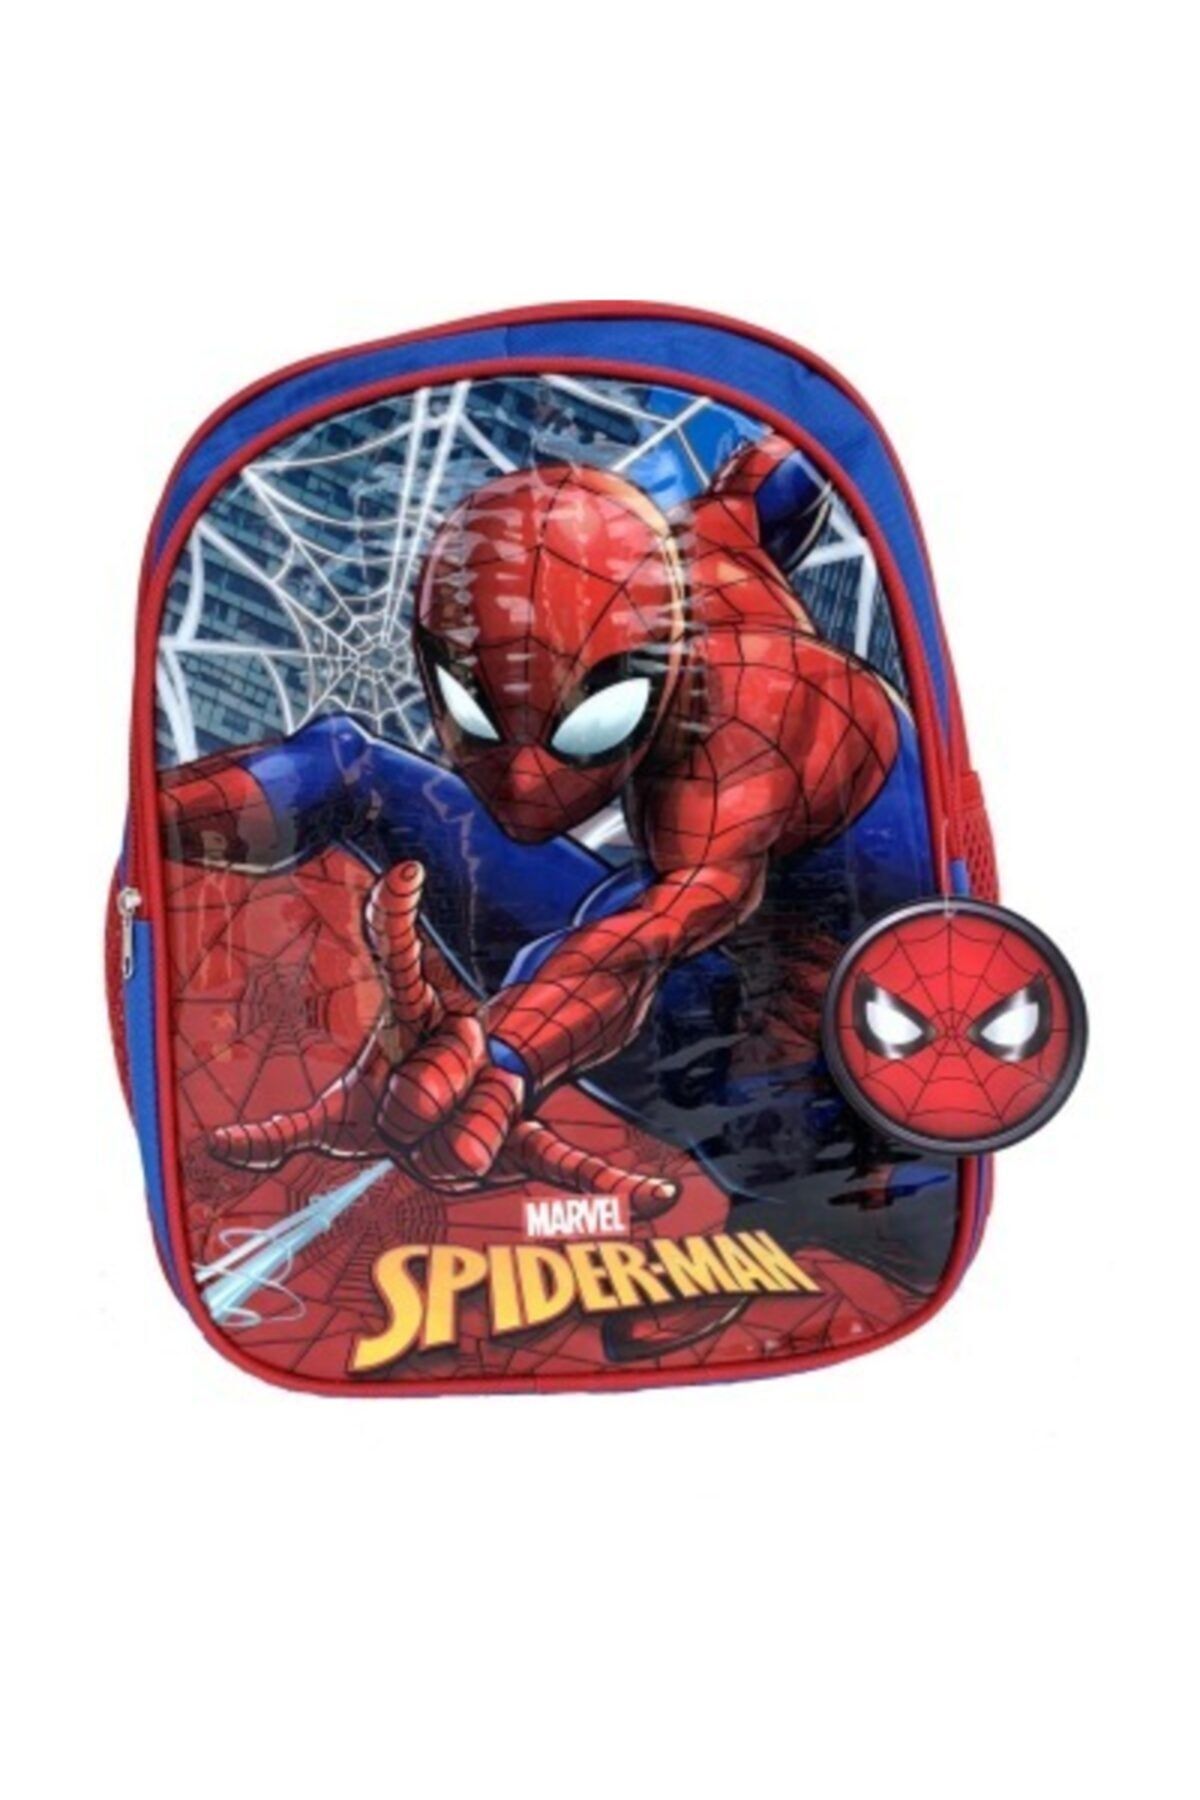 Hakan Çanta Spiderman Okul Çantası 96625-6256